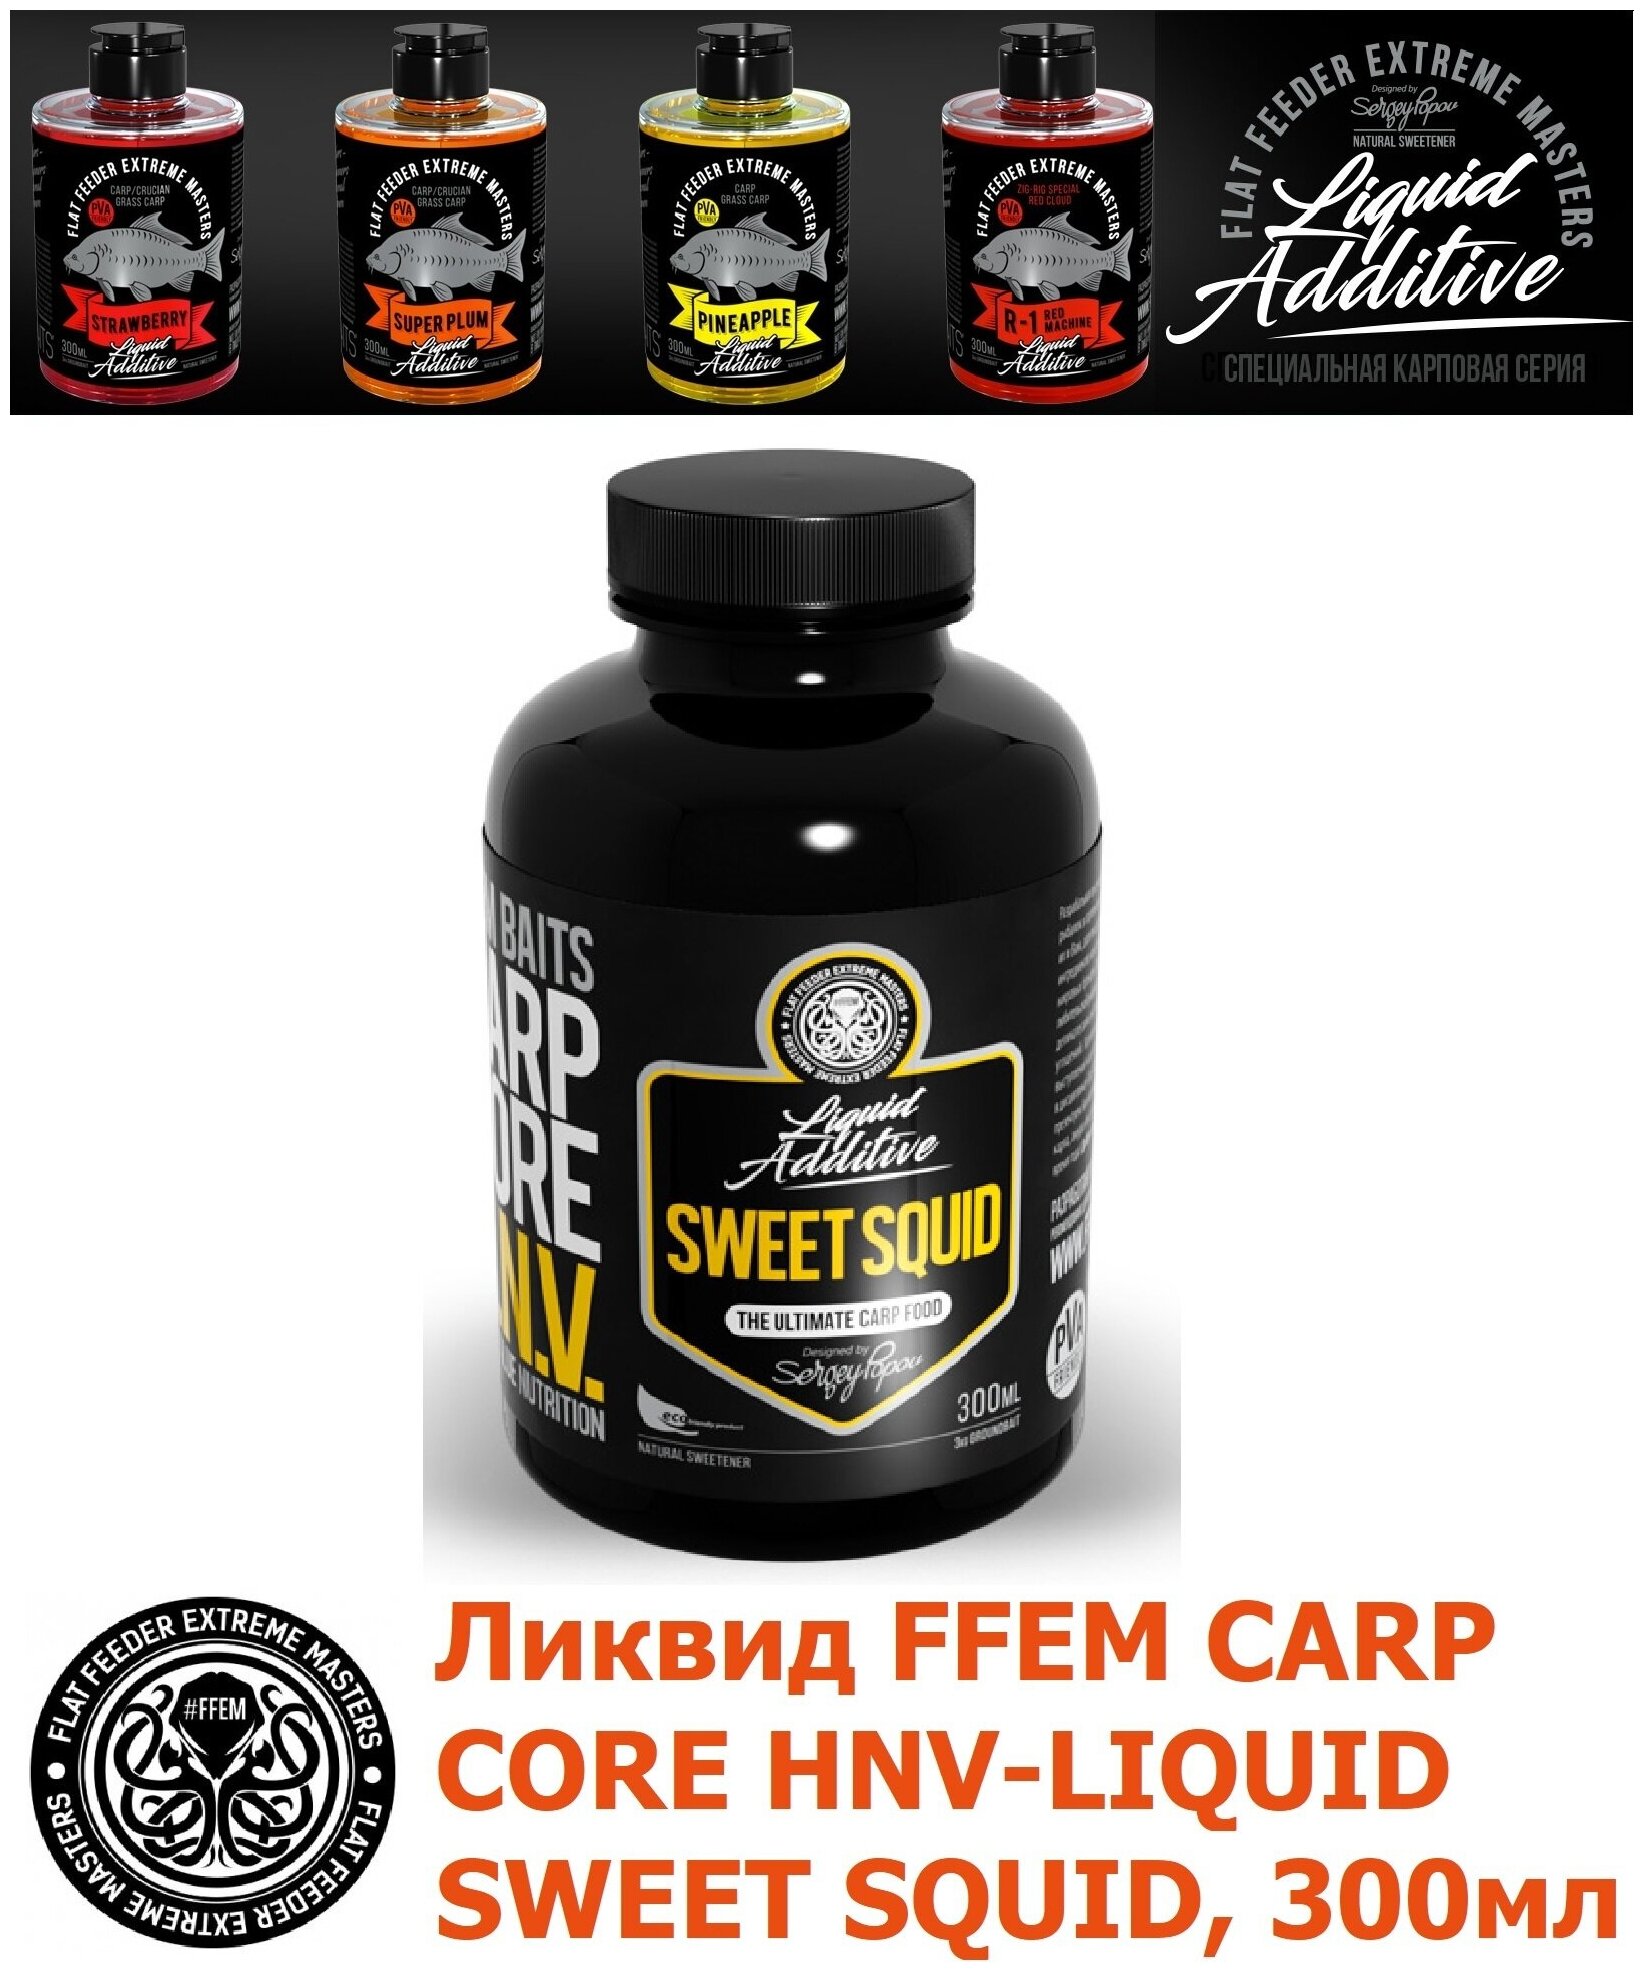 Ликвид FFEM Carp Core HNV-Liquid Sweet Squid 300мл / активатор клёва / жидкое питание / ликвид / бустер